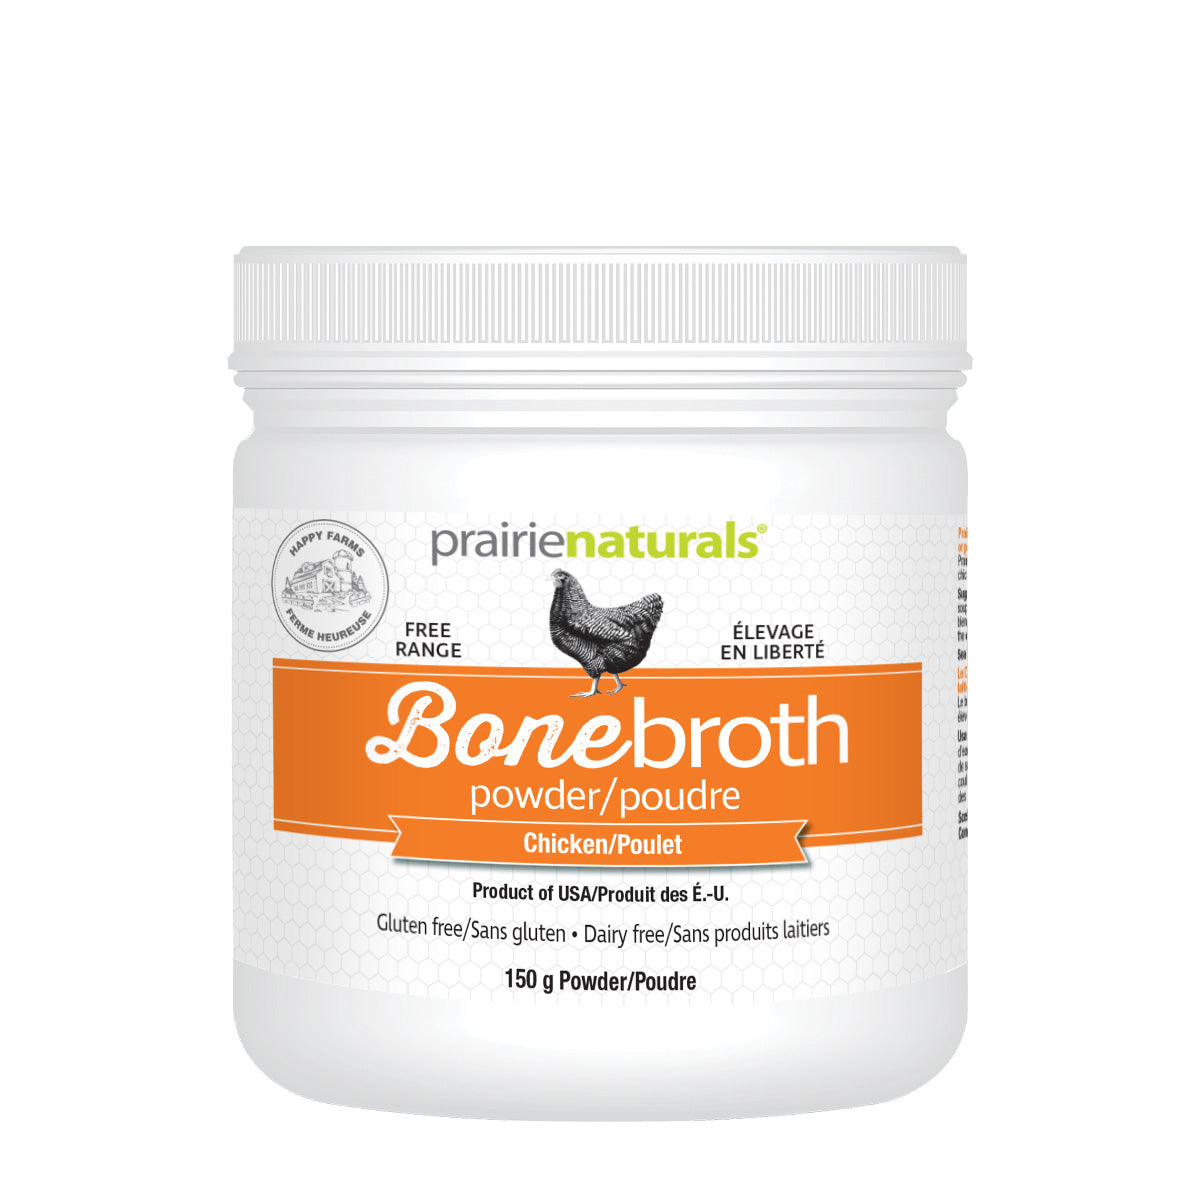 Prairie naturals - bone broth powder